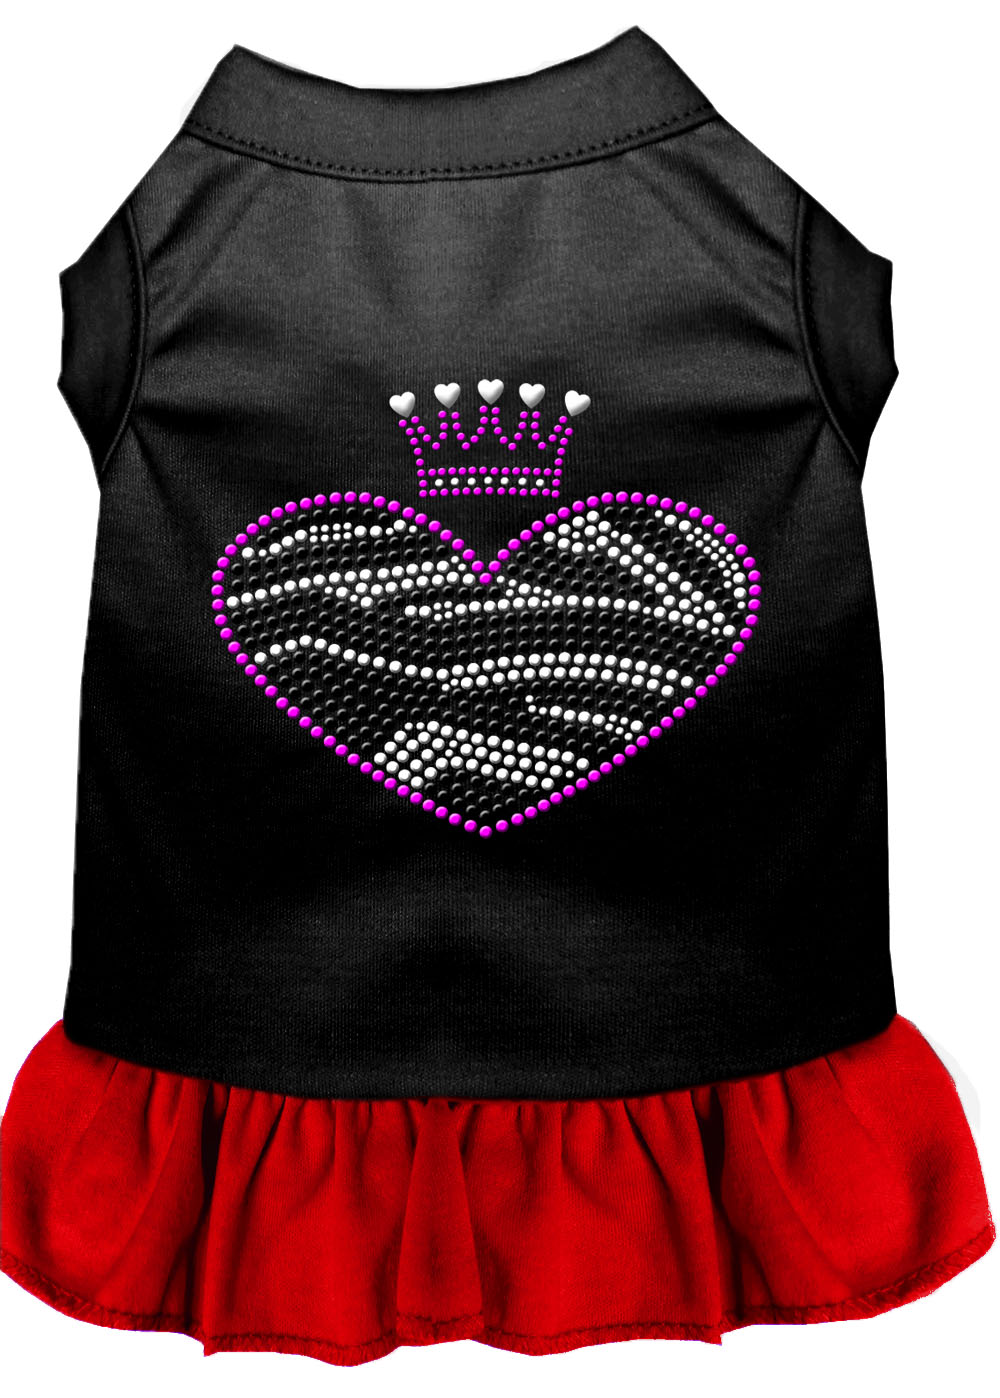 Zebra Heart Rhinestone Dress Black With Red Xxl GreatEagleInc